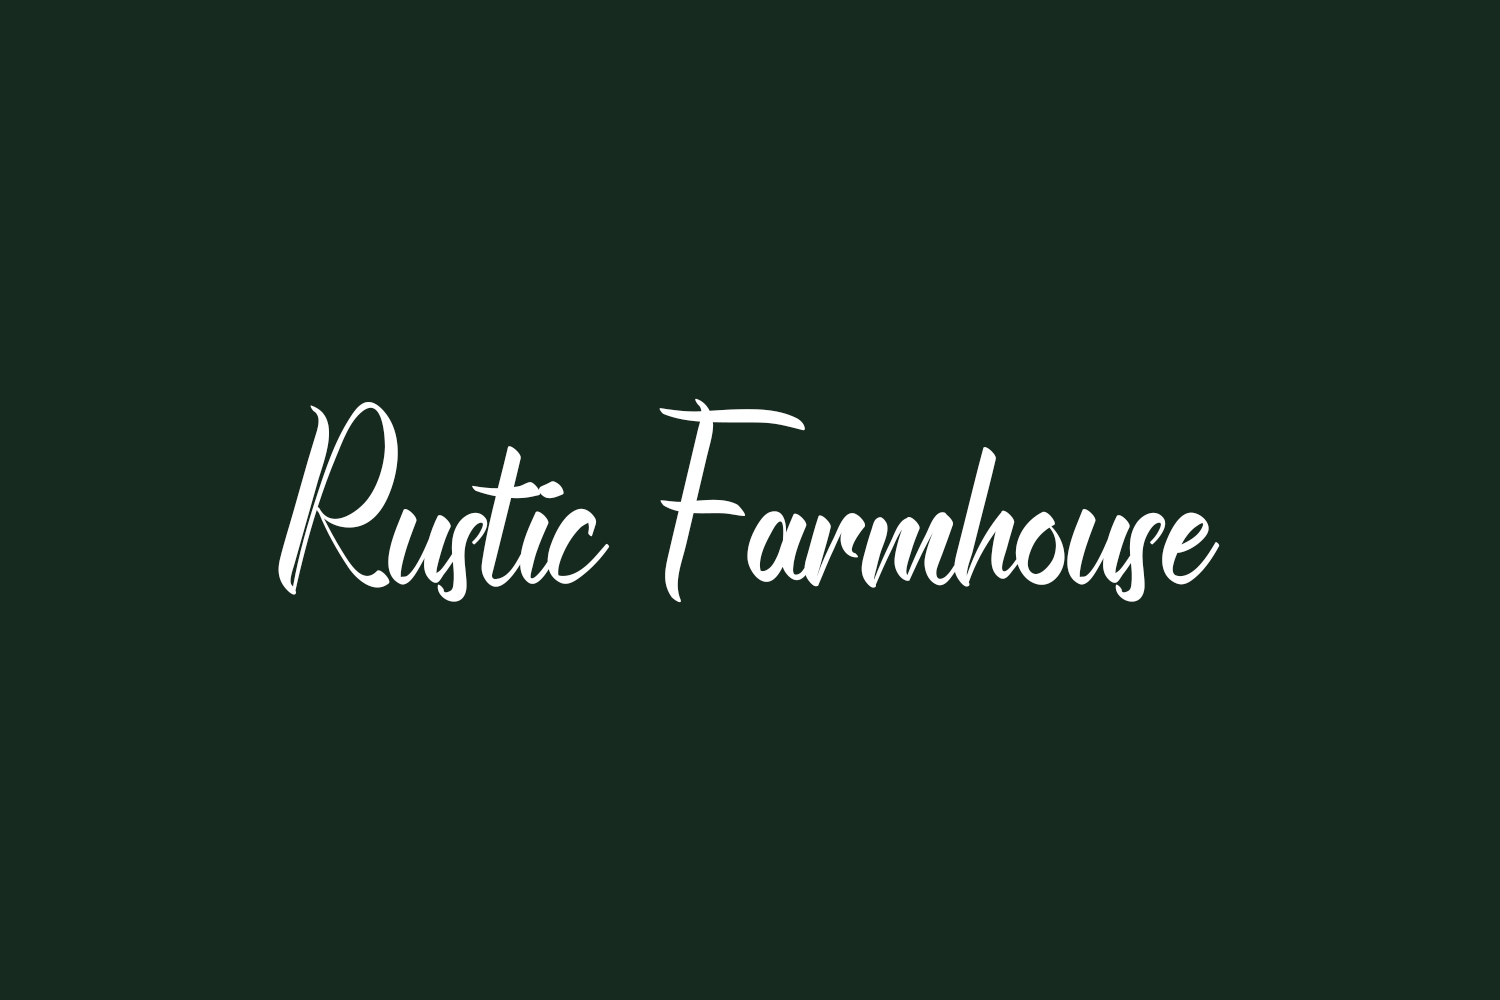 Rustic Farmhouse Free Font